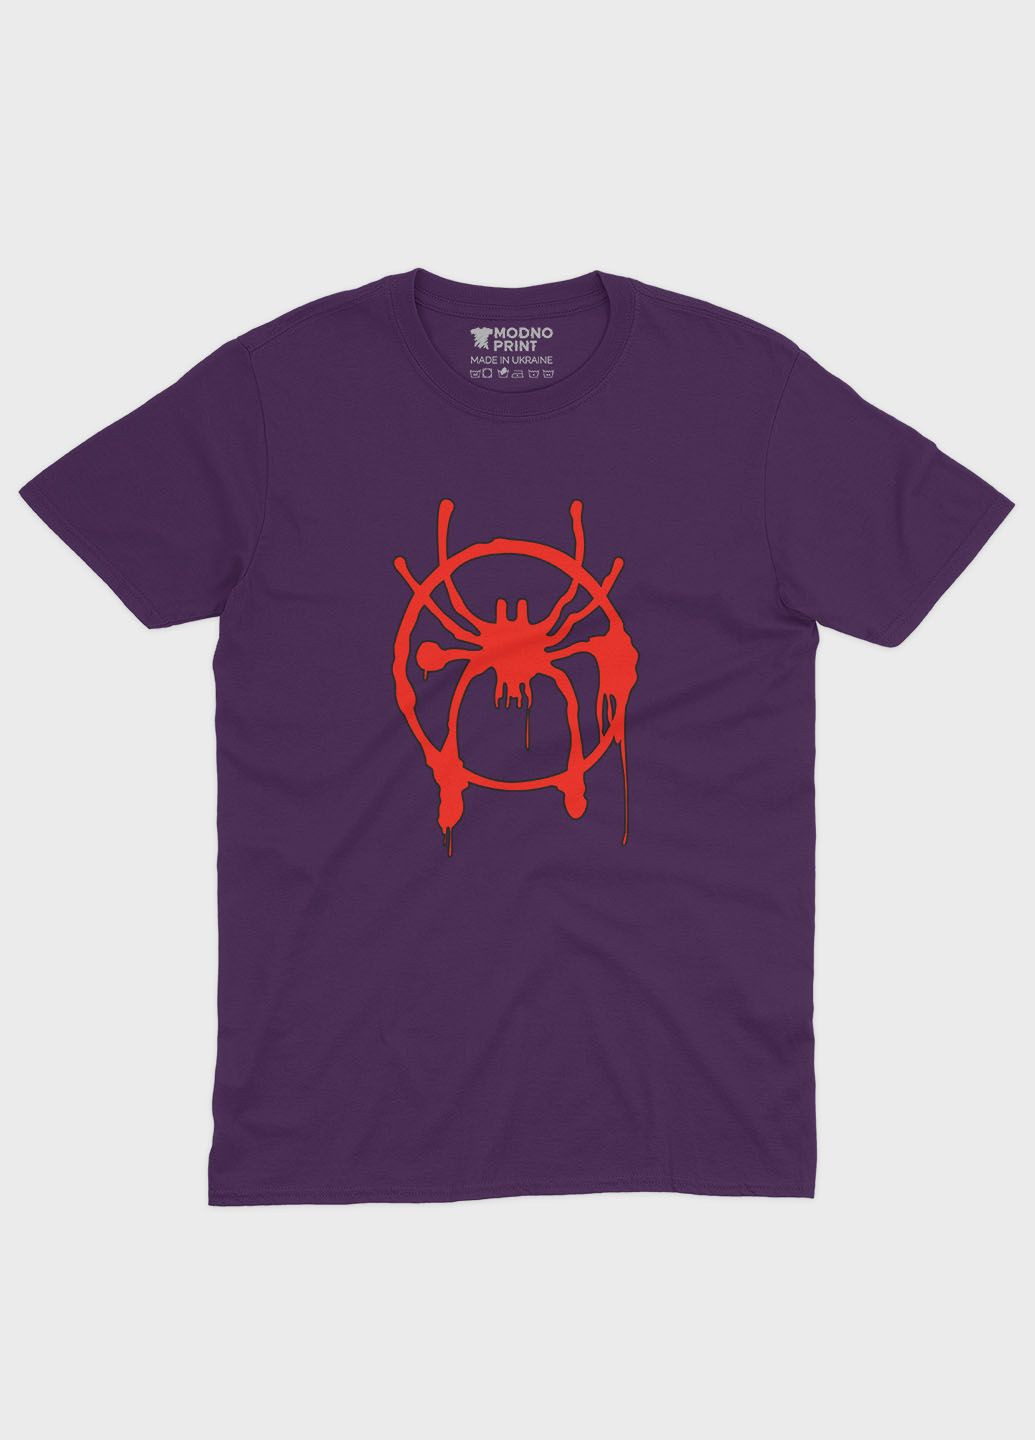 Фіолетова демісезонна футболка для хлопчика з принтом супергероя - людина-павук (ts001-1-dby-006-014-109-b) Modno